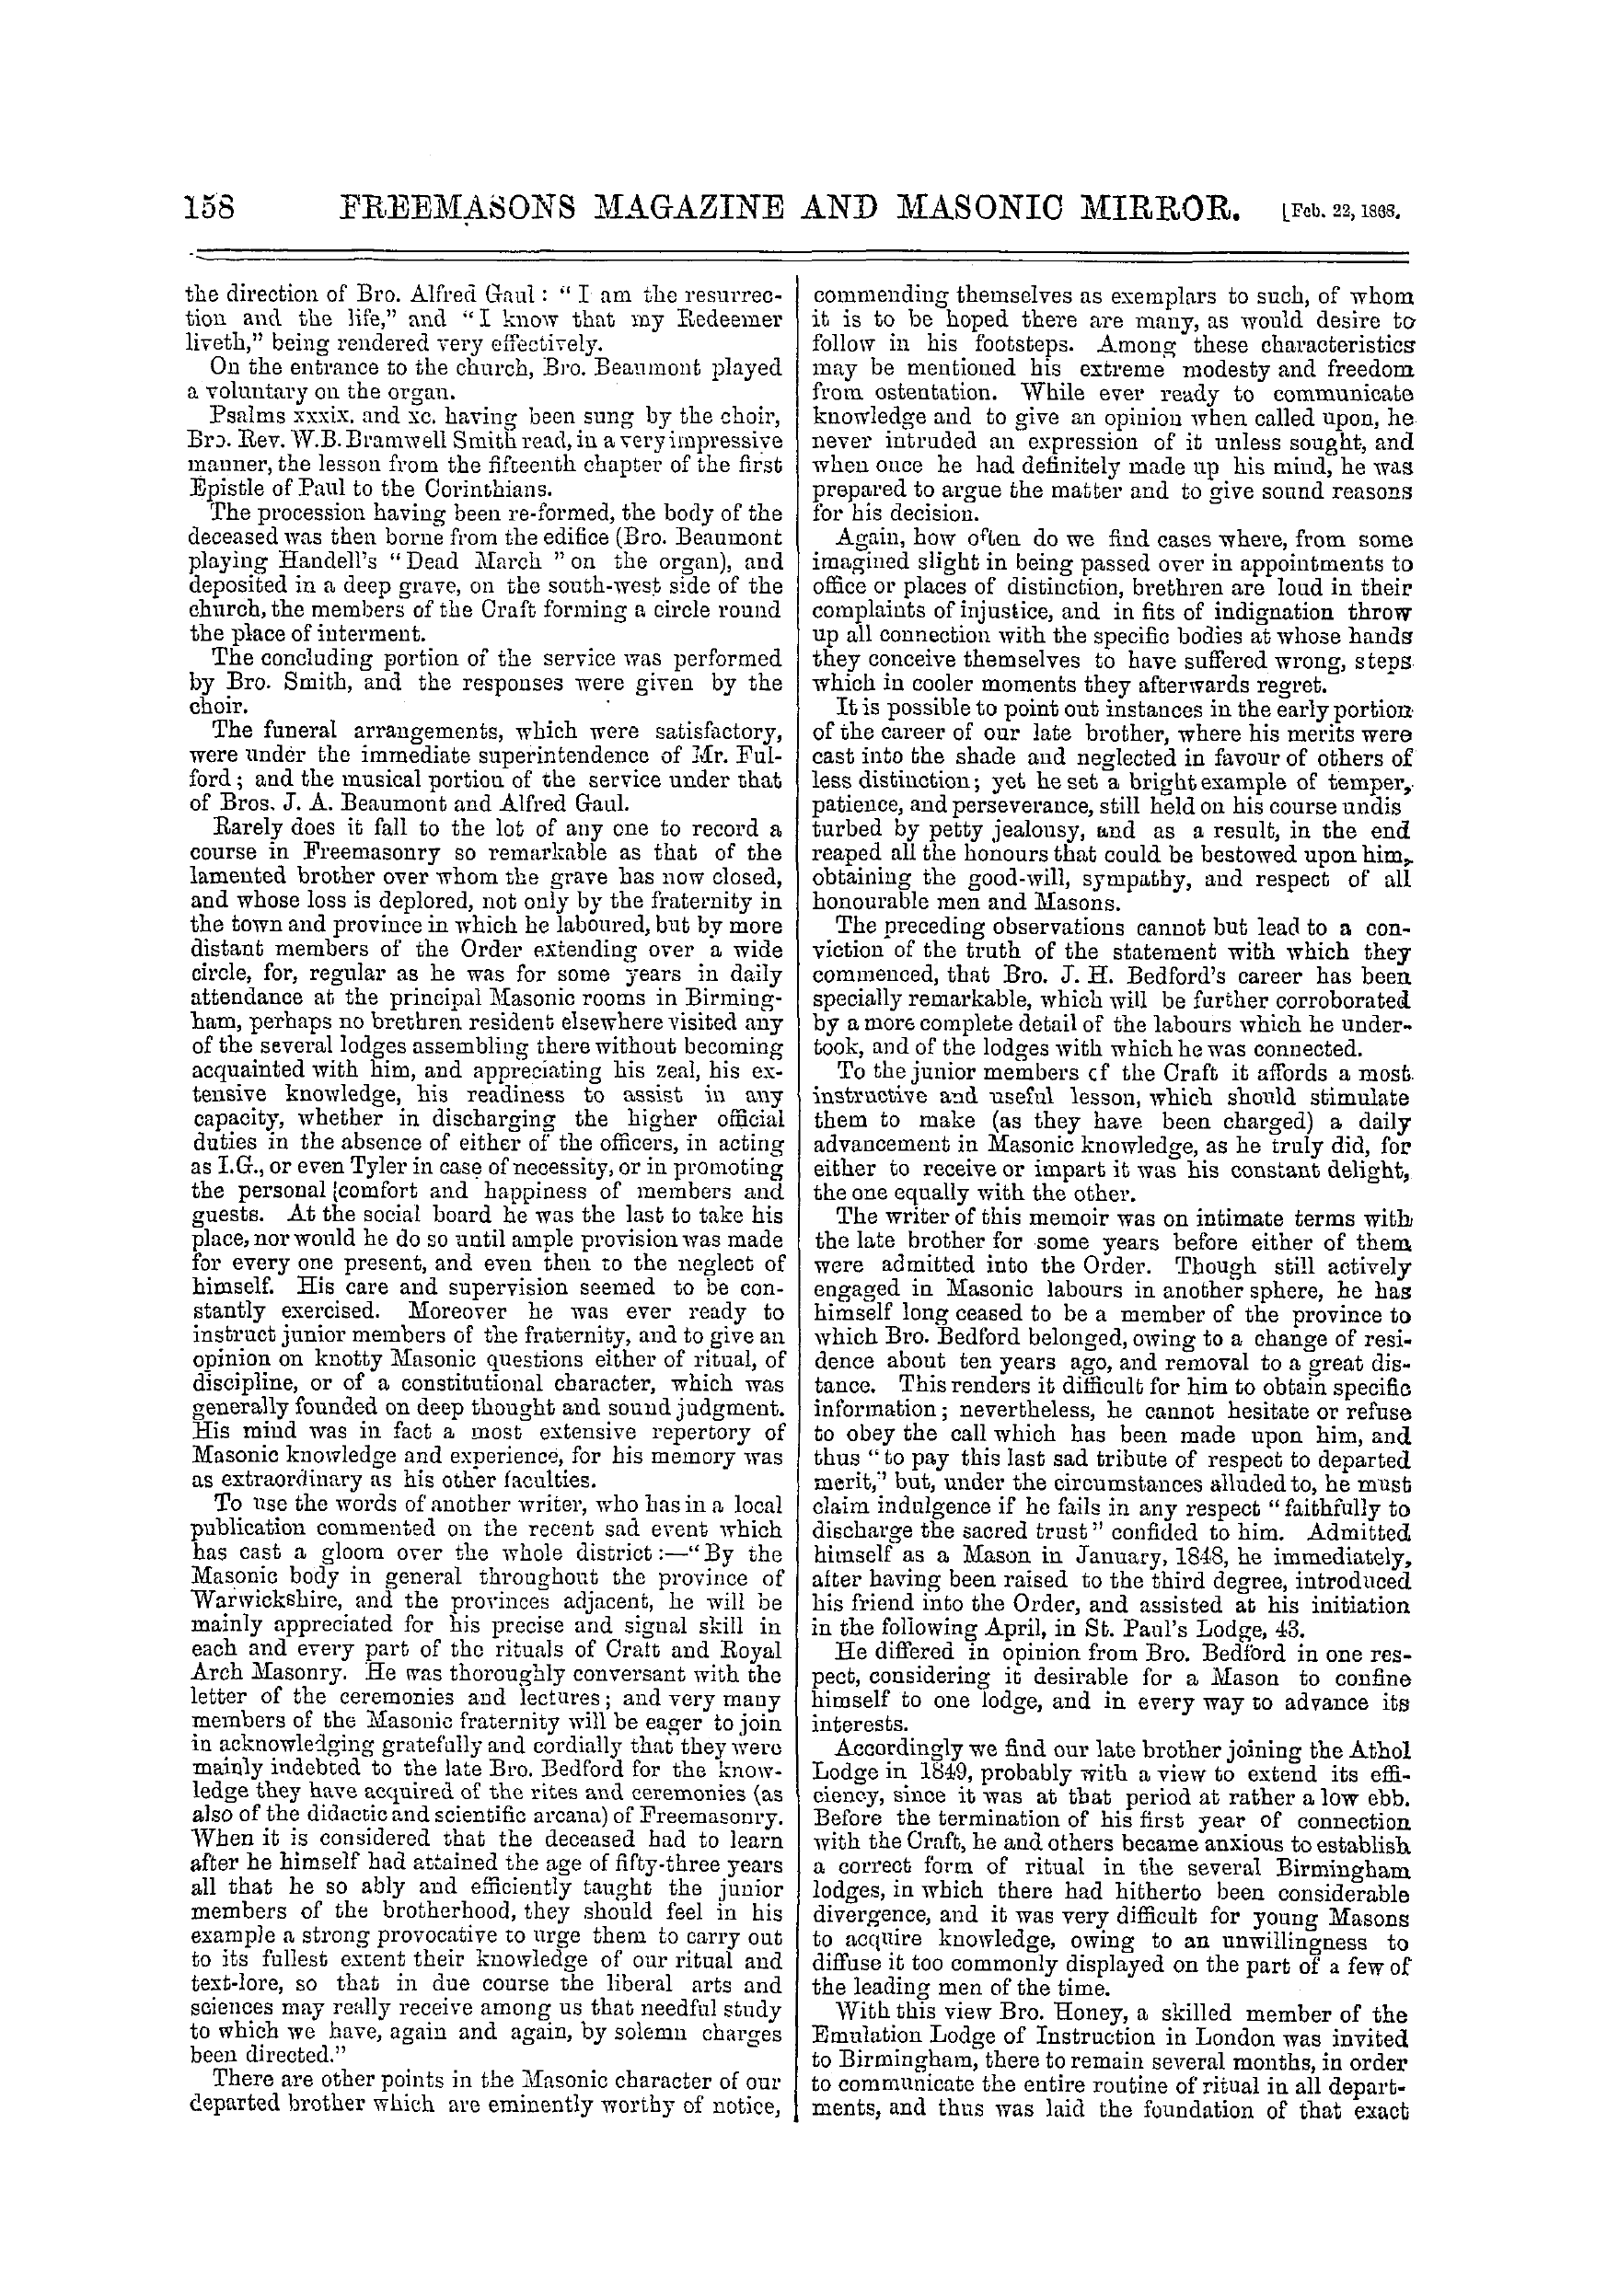 The Freemasons' Monthly Magazine: 1868-02-22: 18